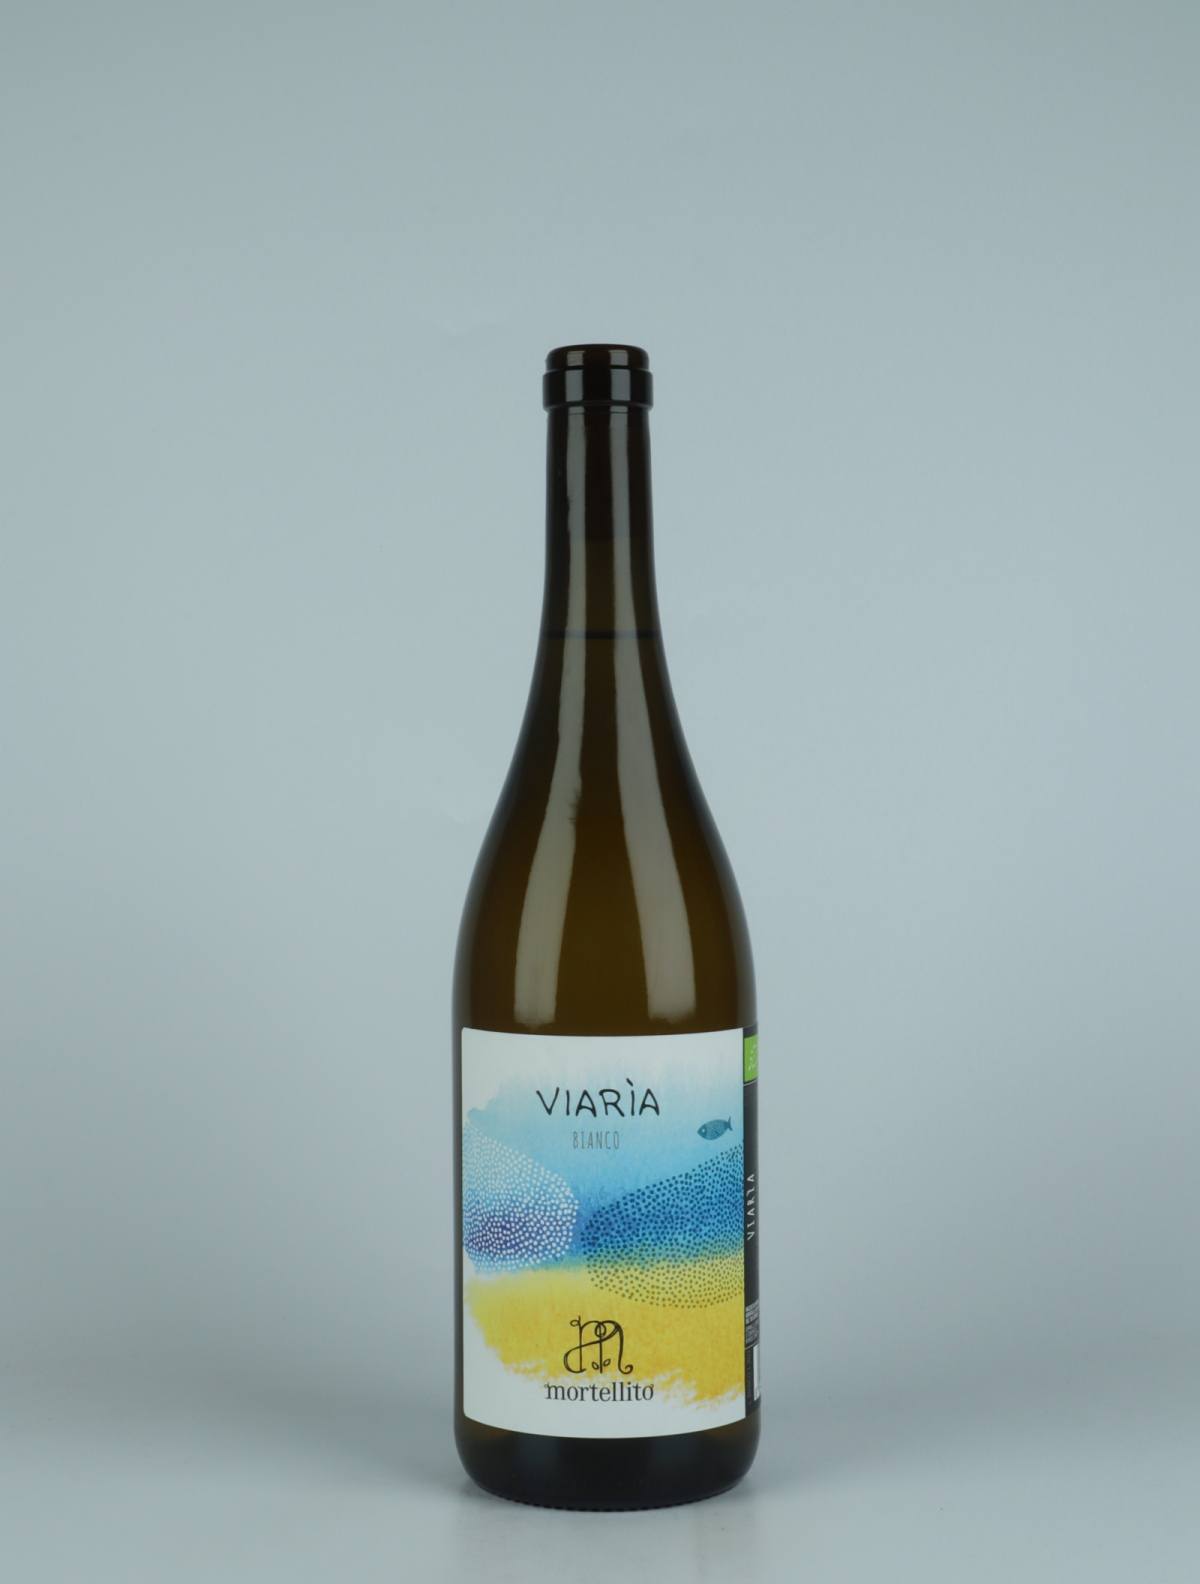 A bottle 2022 Viaria White wine from Il Mortellito, Sicily in Italy